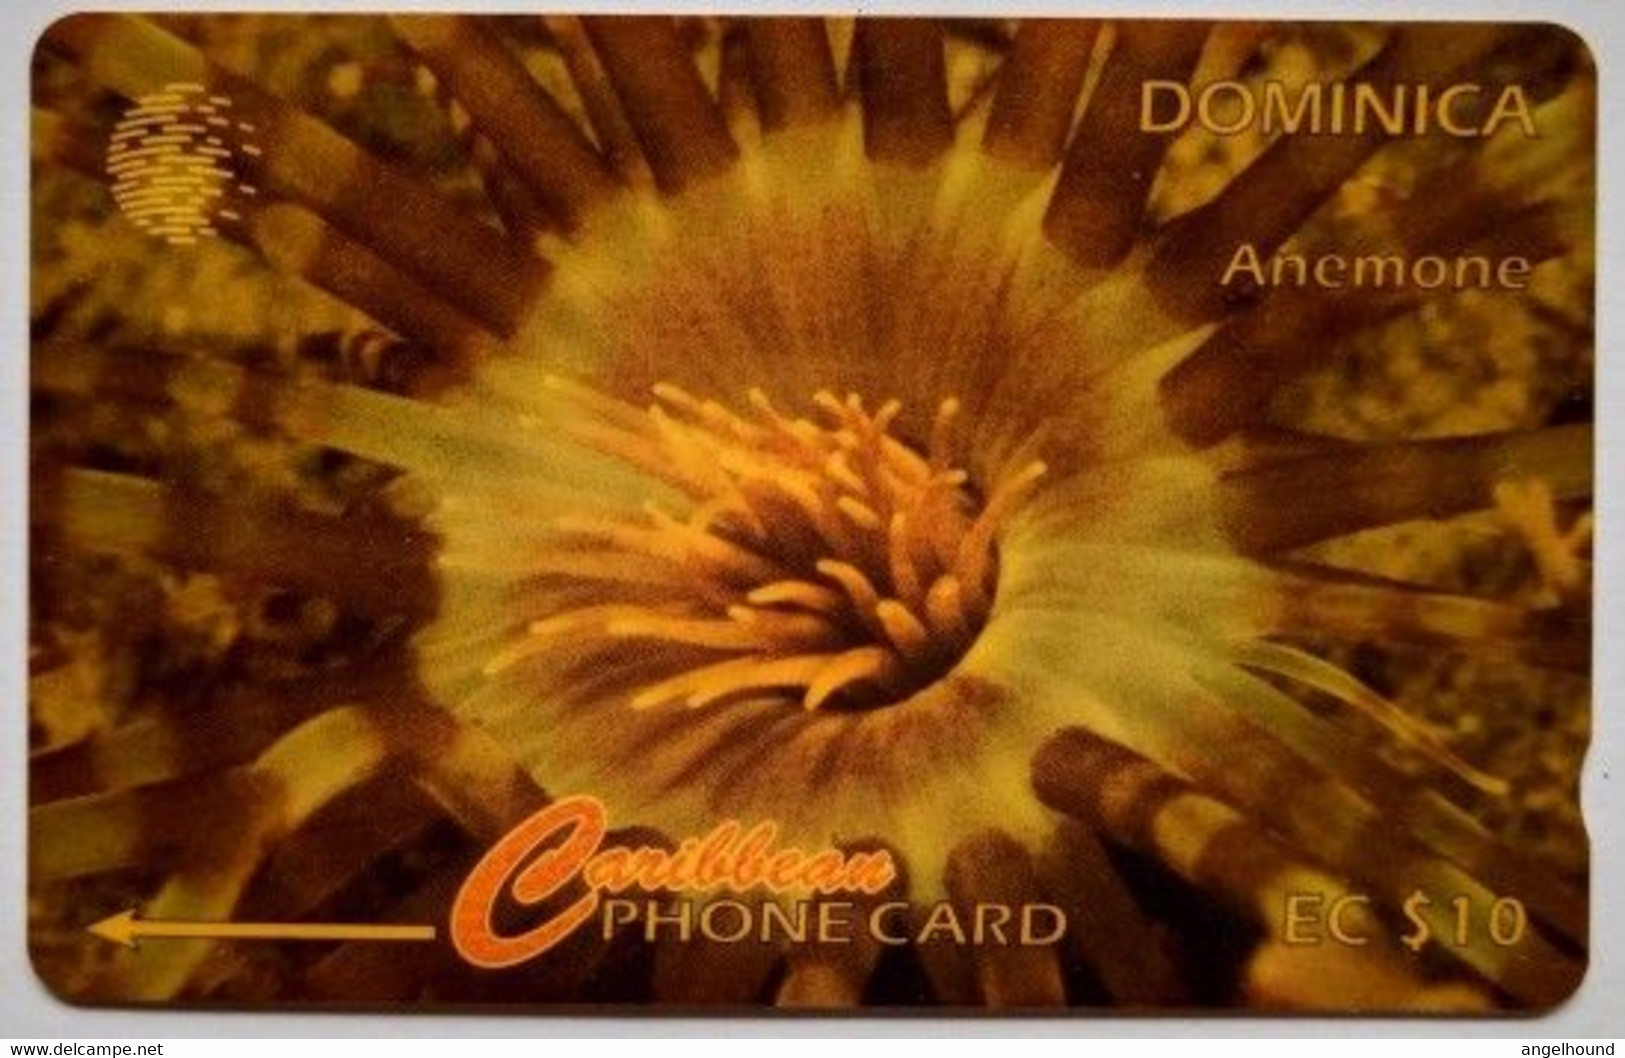 Dominica CW 9CDMA  EC$10 "  Anemone " - Dominica